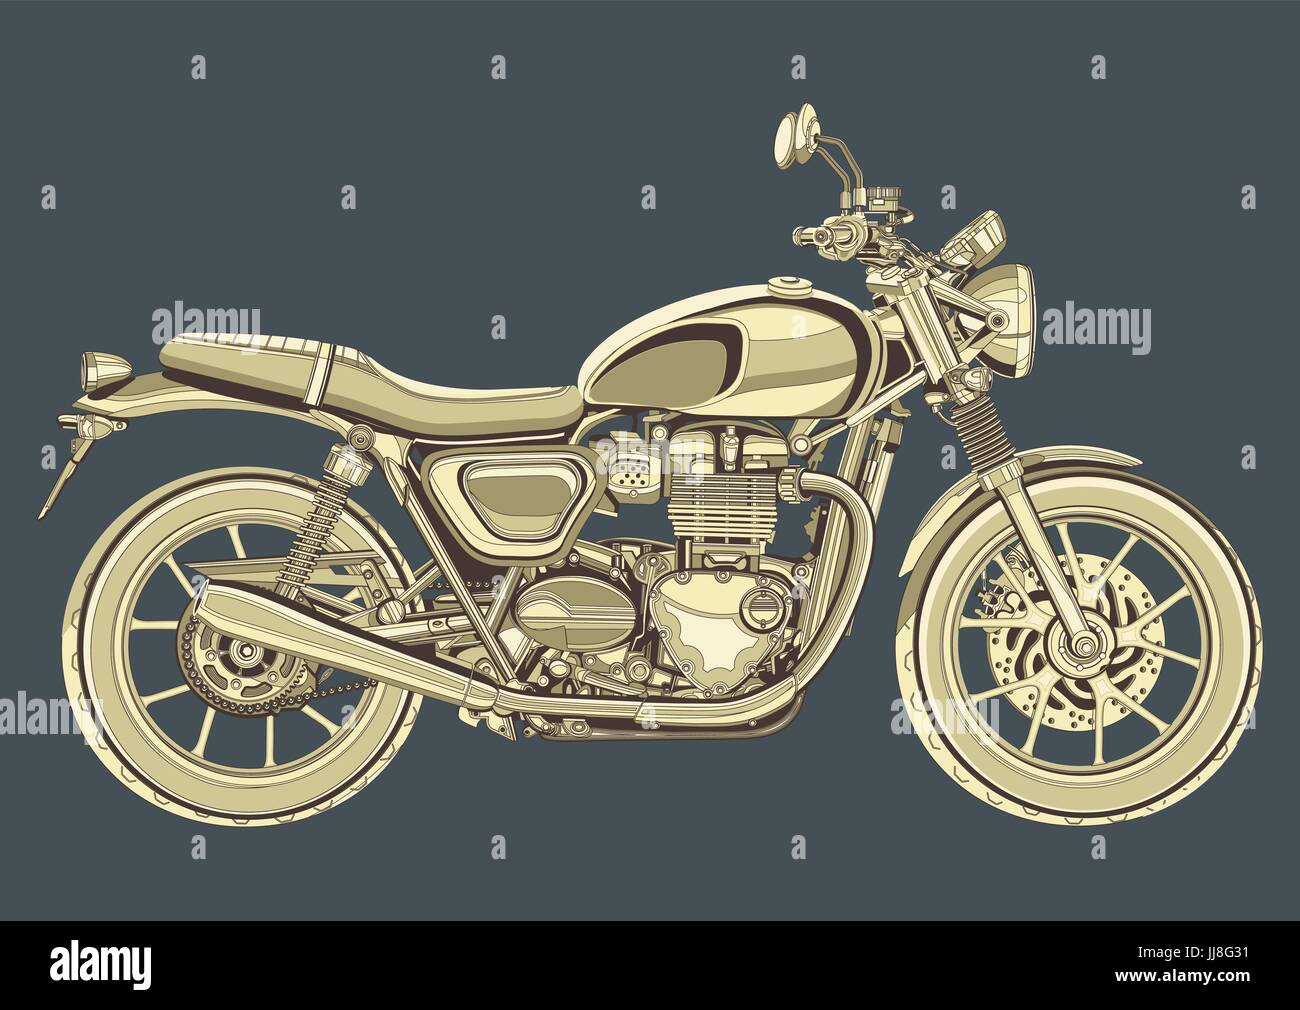 Vecteur de moto vintage, dessin. Moto jaune demi-face avec beaucoup de détails sur un fond bleu gris Illustration de Vecteur